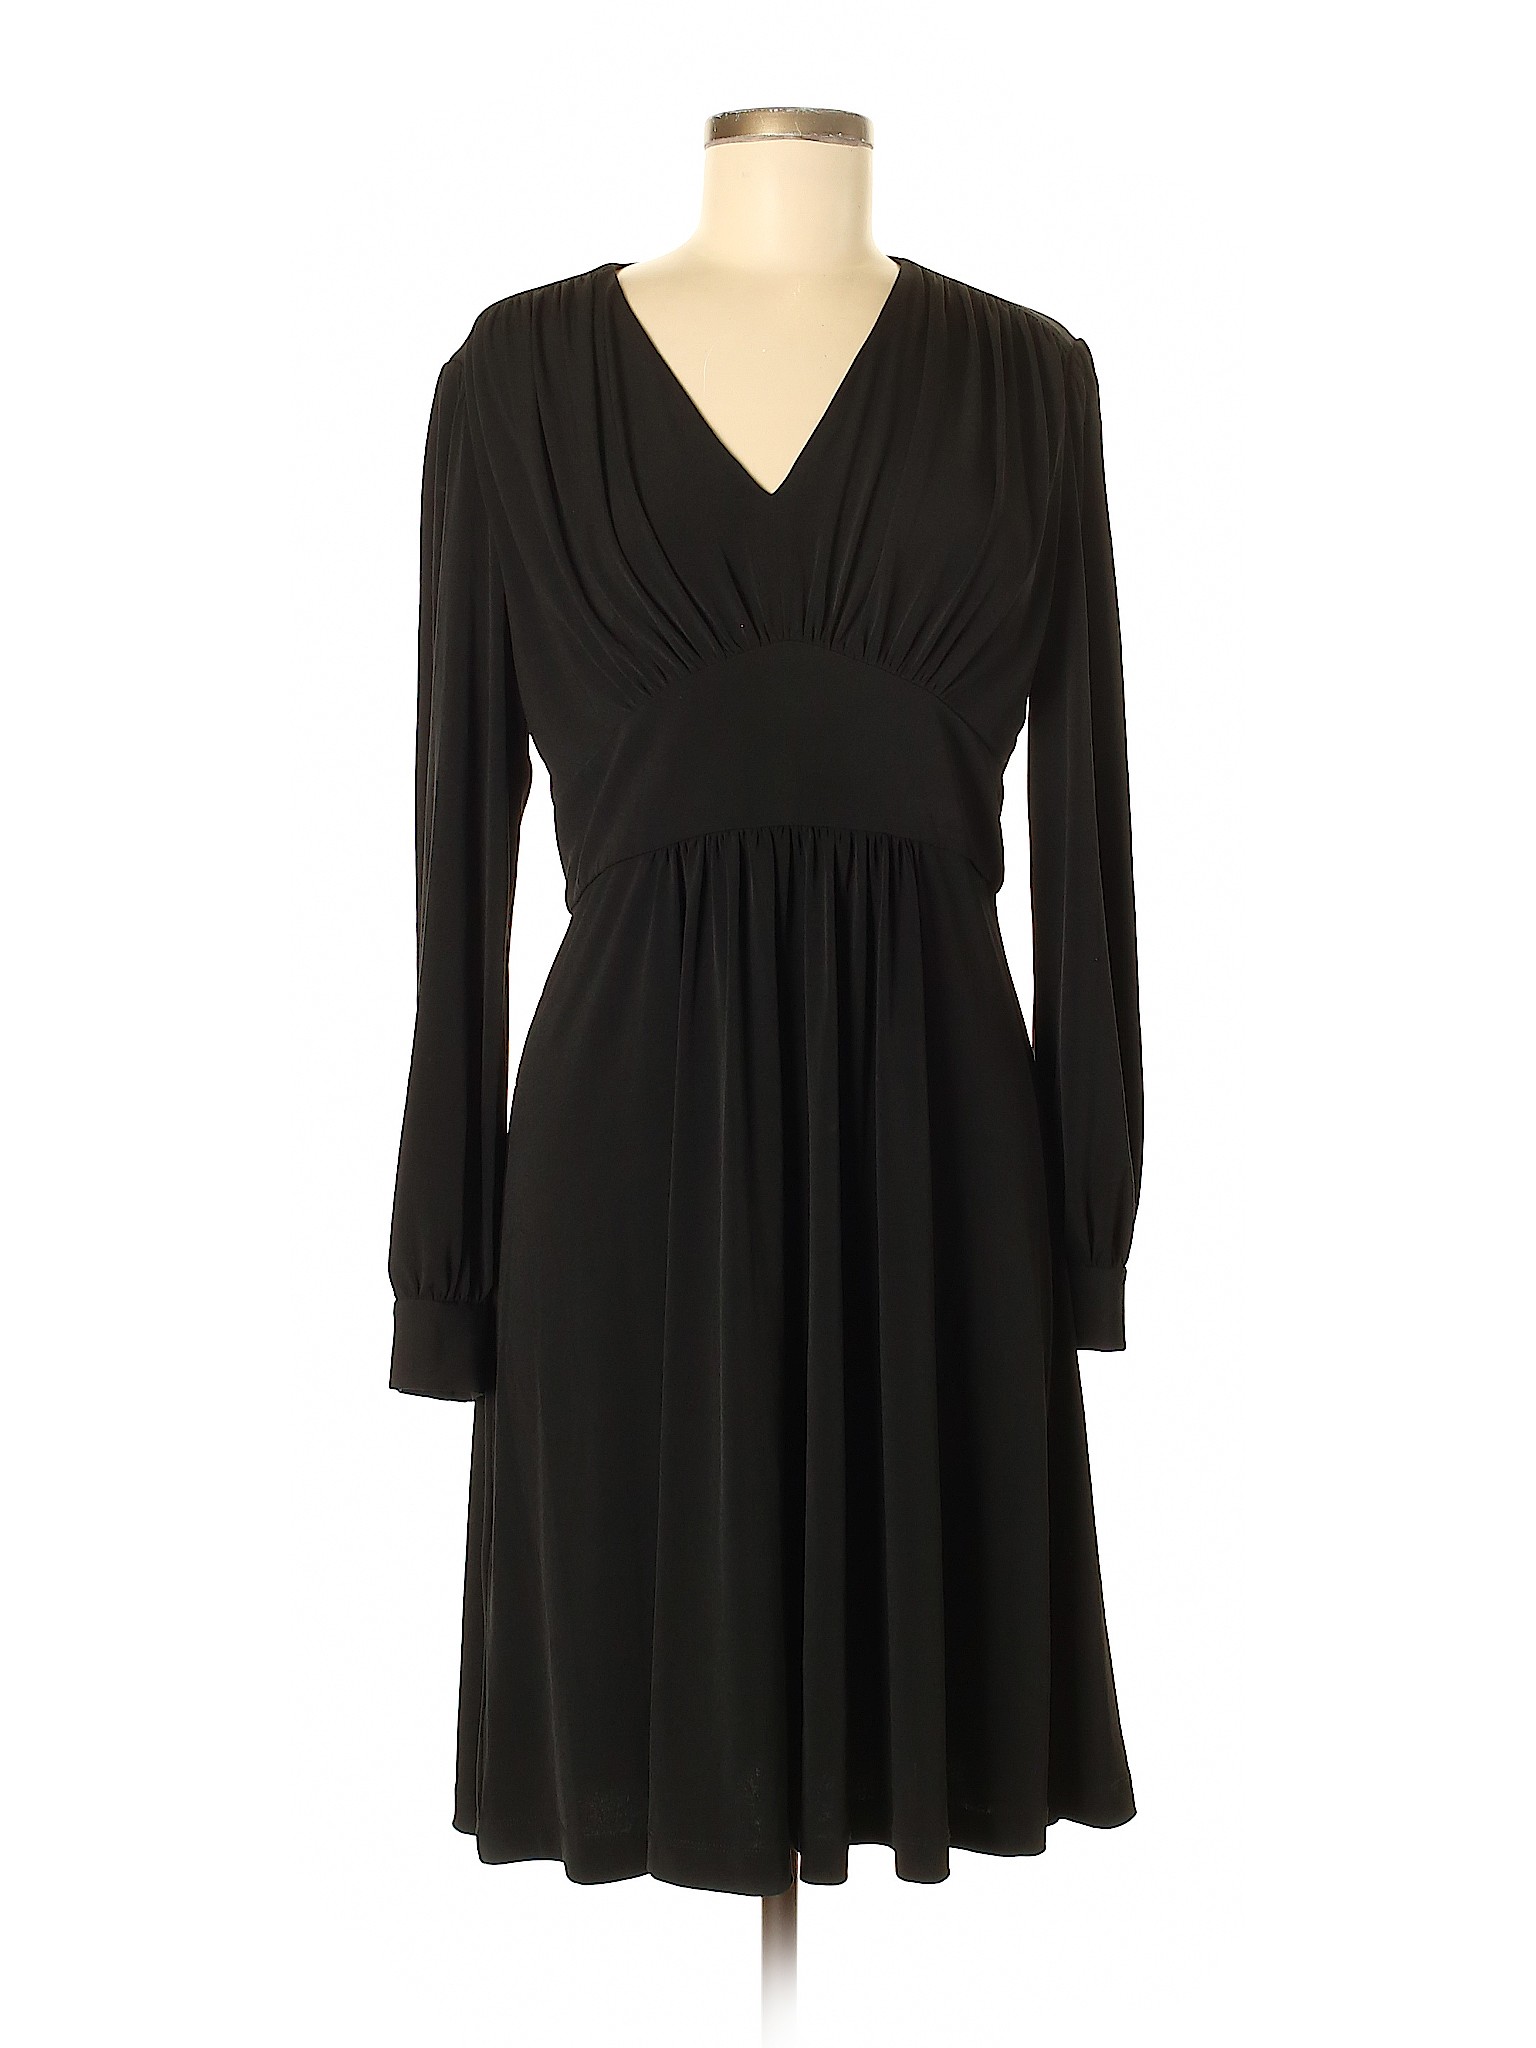 Vicky Tiel Women Black Casual Dress M | eBay